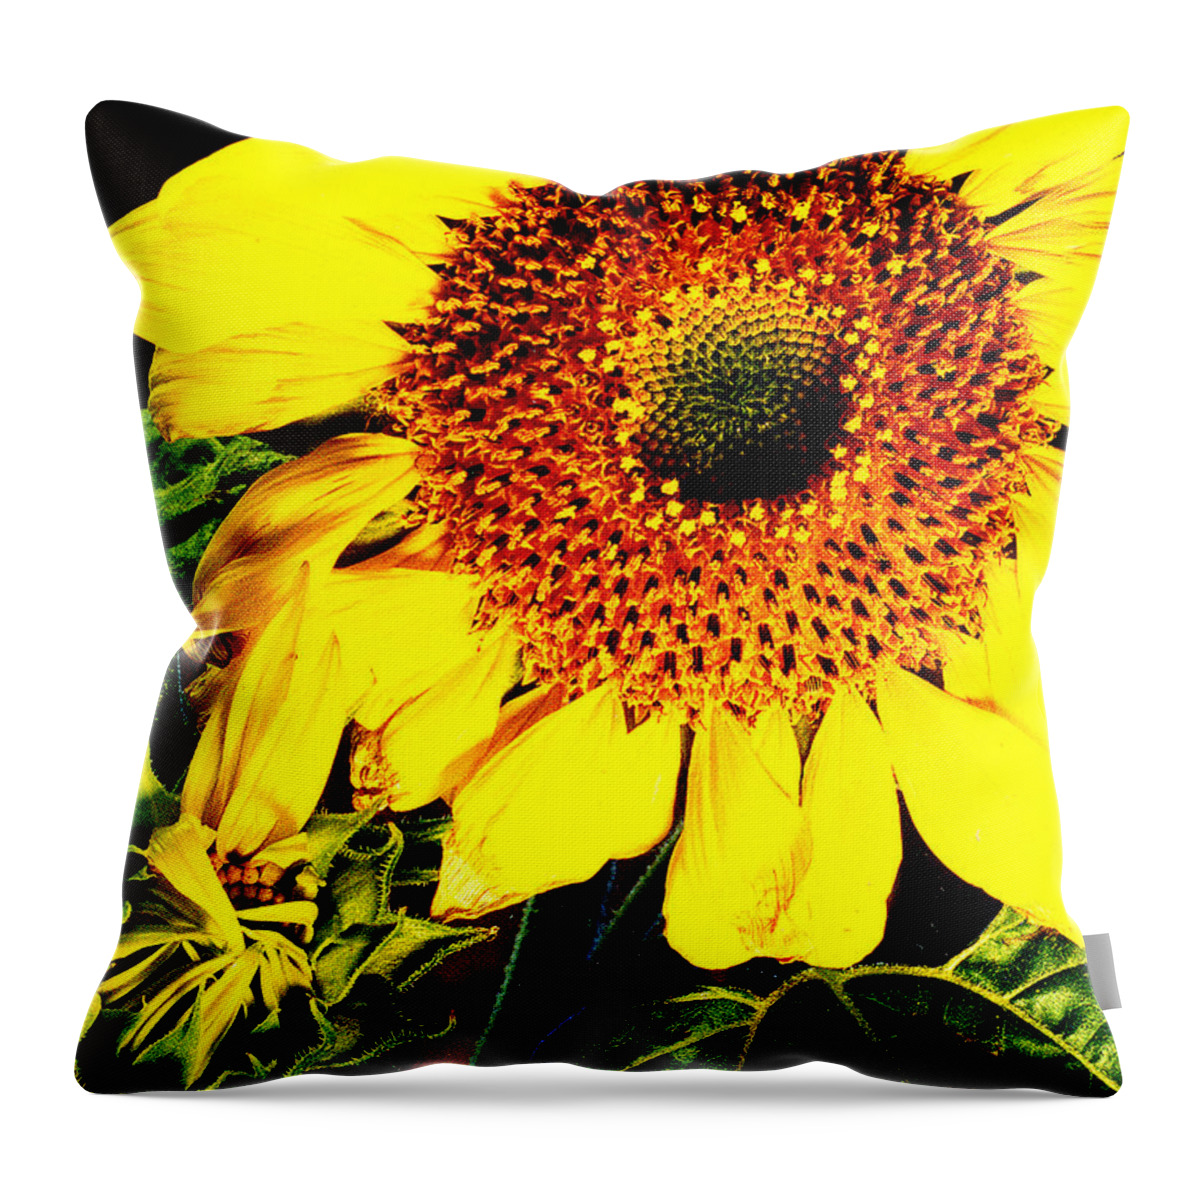 Sunflower Throw Pillow featuring the photograph Sunflower by Nancy Mueller